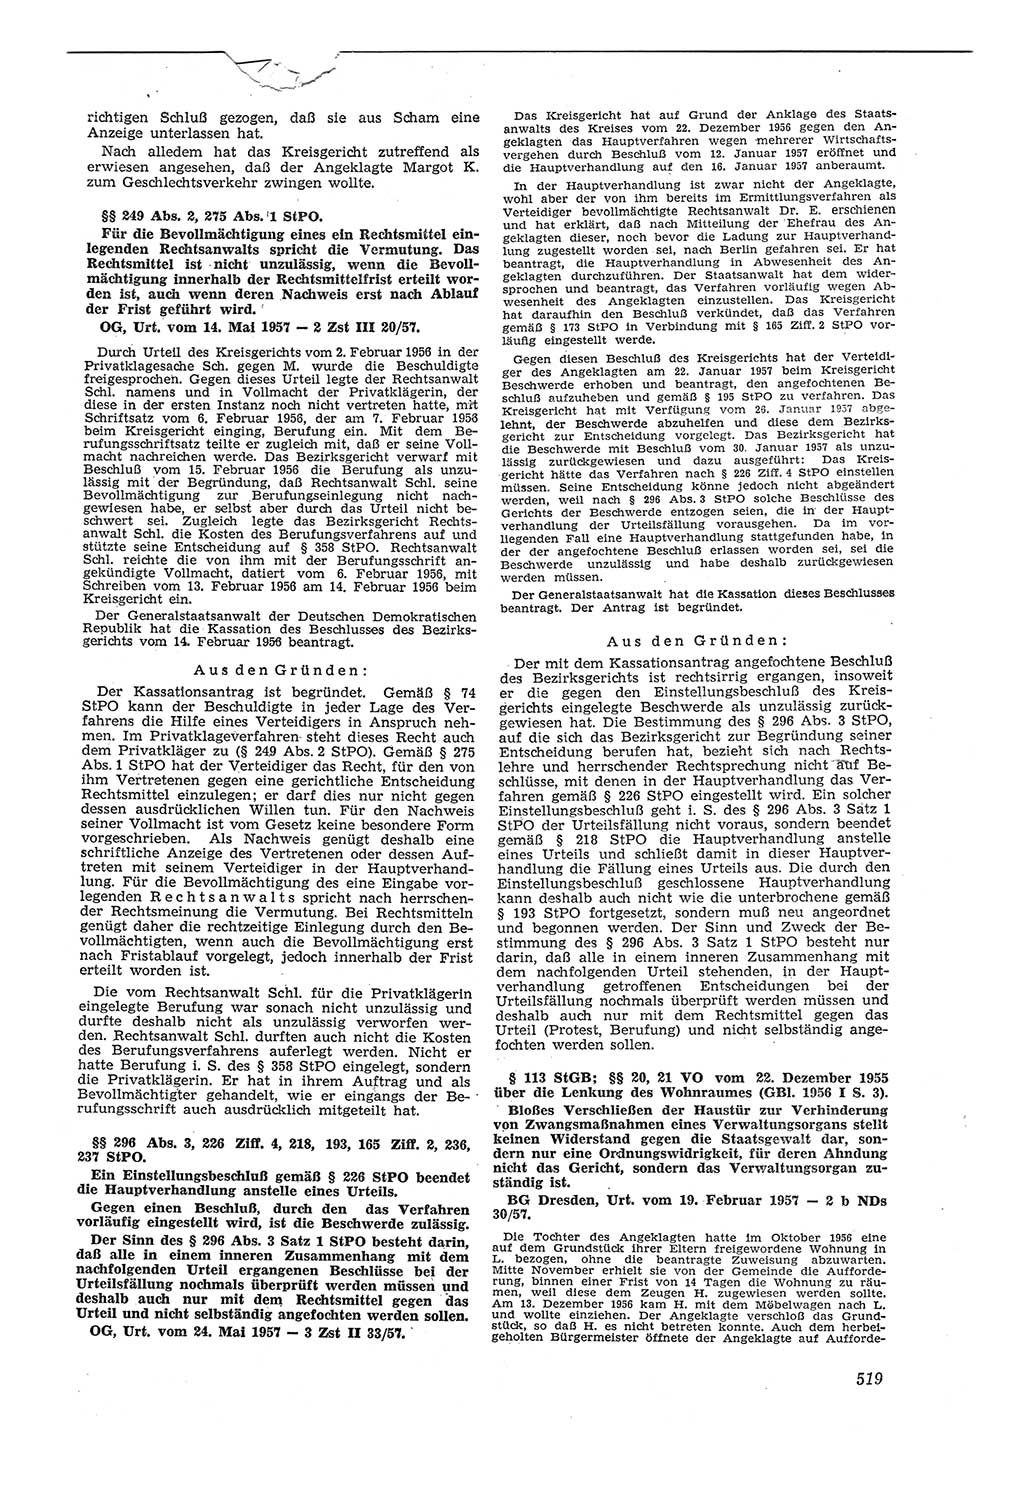 Neue Justiz (NJ), Zeitschrift für Recht und Rechtswissenschaft [Deutsche Demokratische Republik (DDR)], 11. Jahrgang 1957, Seite 519 (NJ DDR 1957, S. 519)